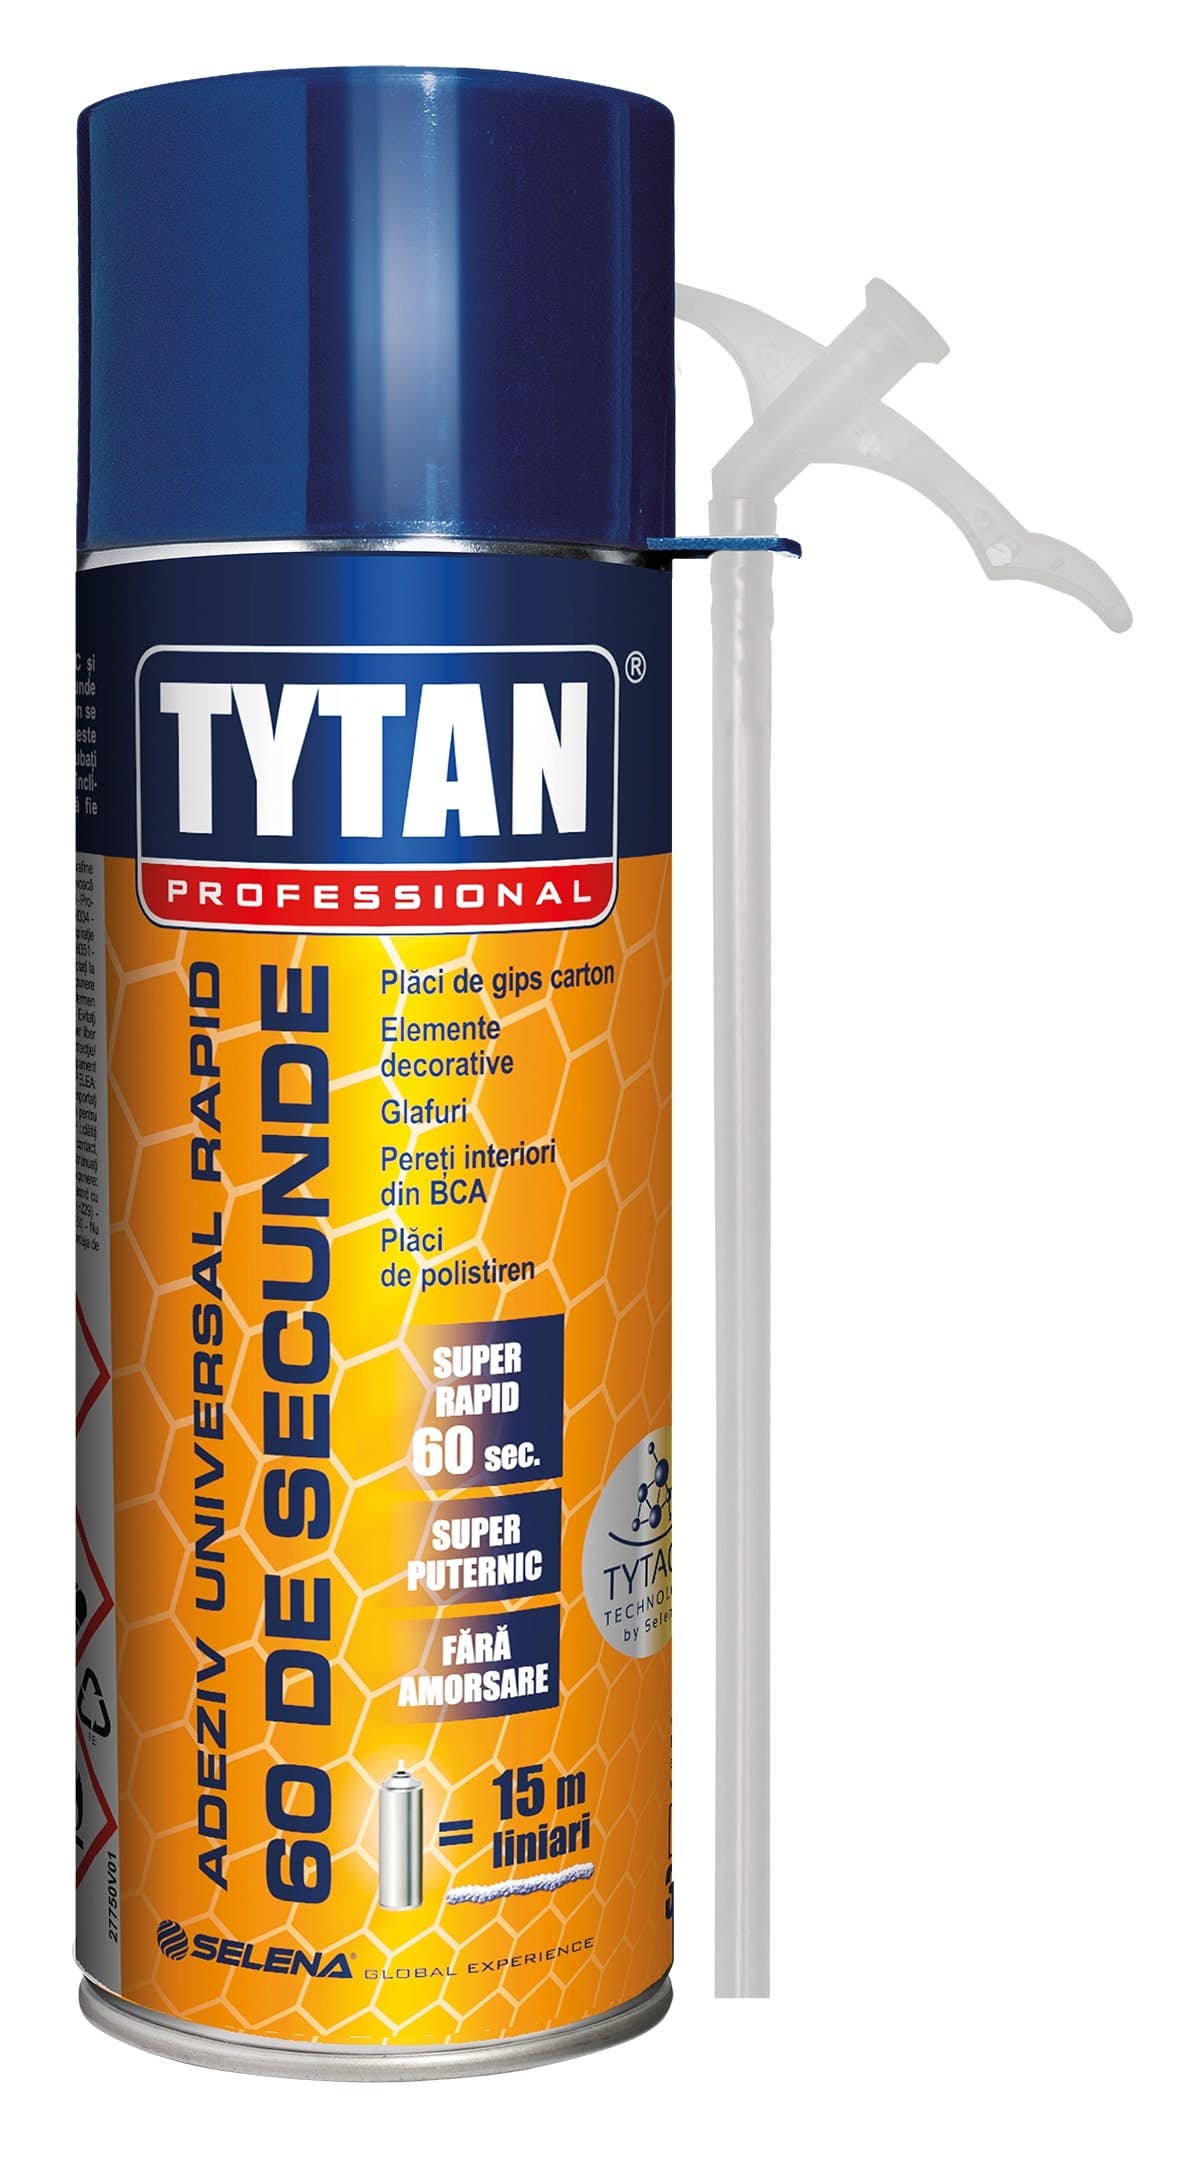 Polyurethane foams - 60 seconds straw mounting glue foam, Tytan Professional, 300ml, maxbau.ro